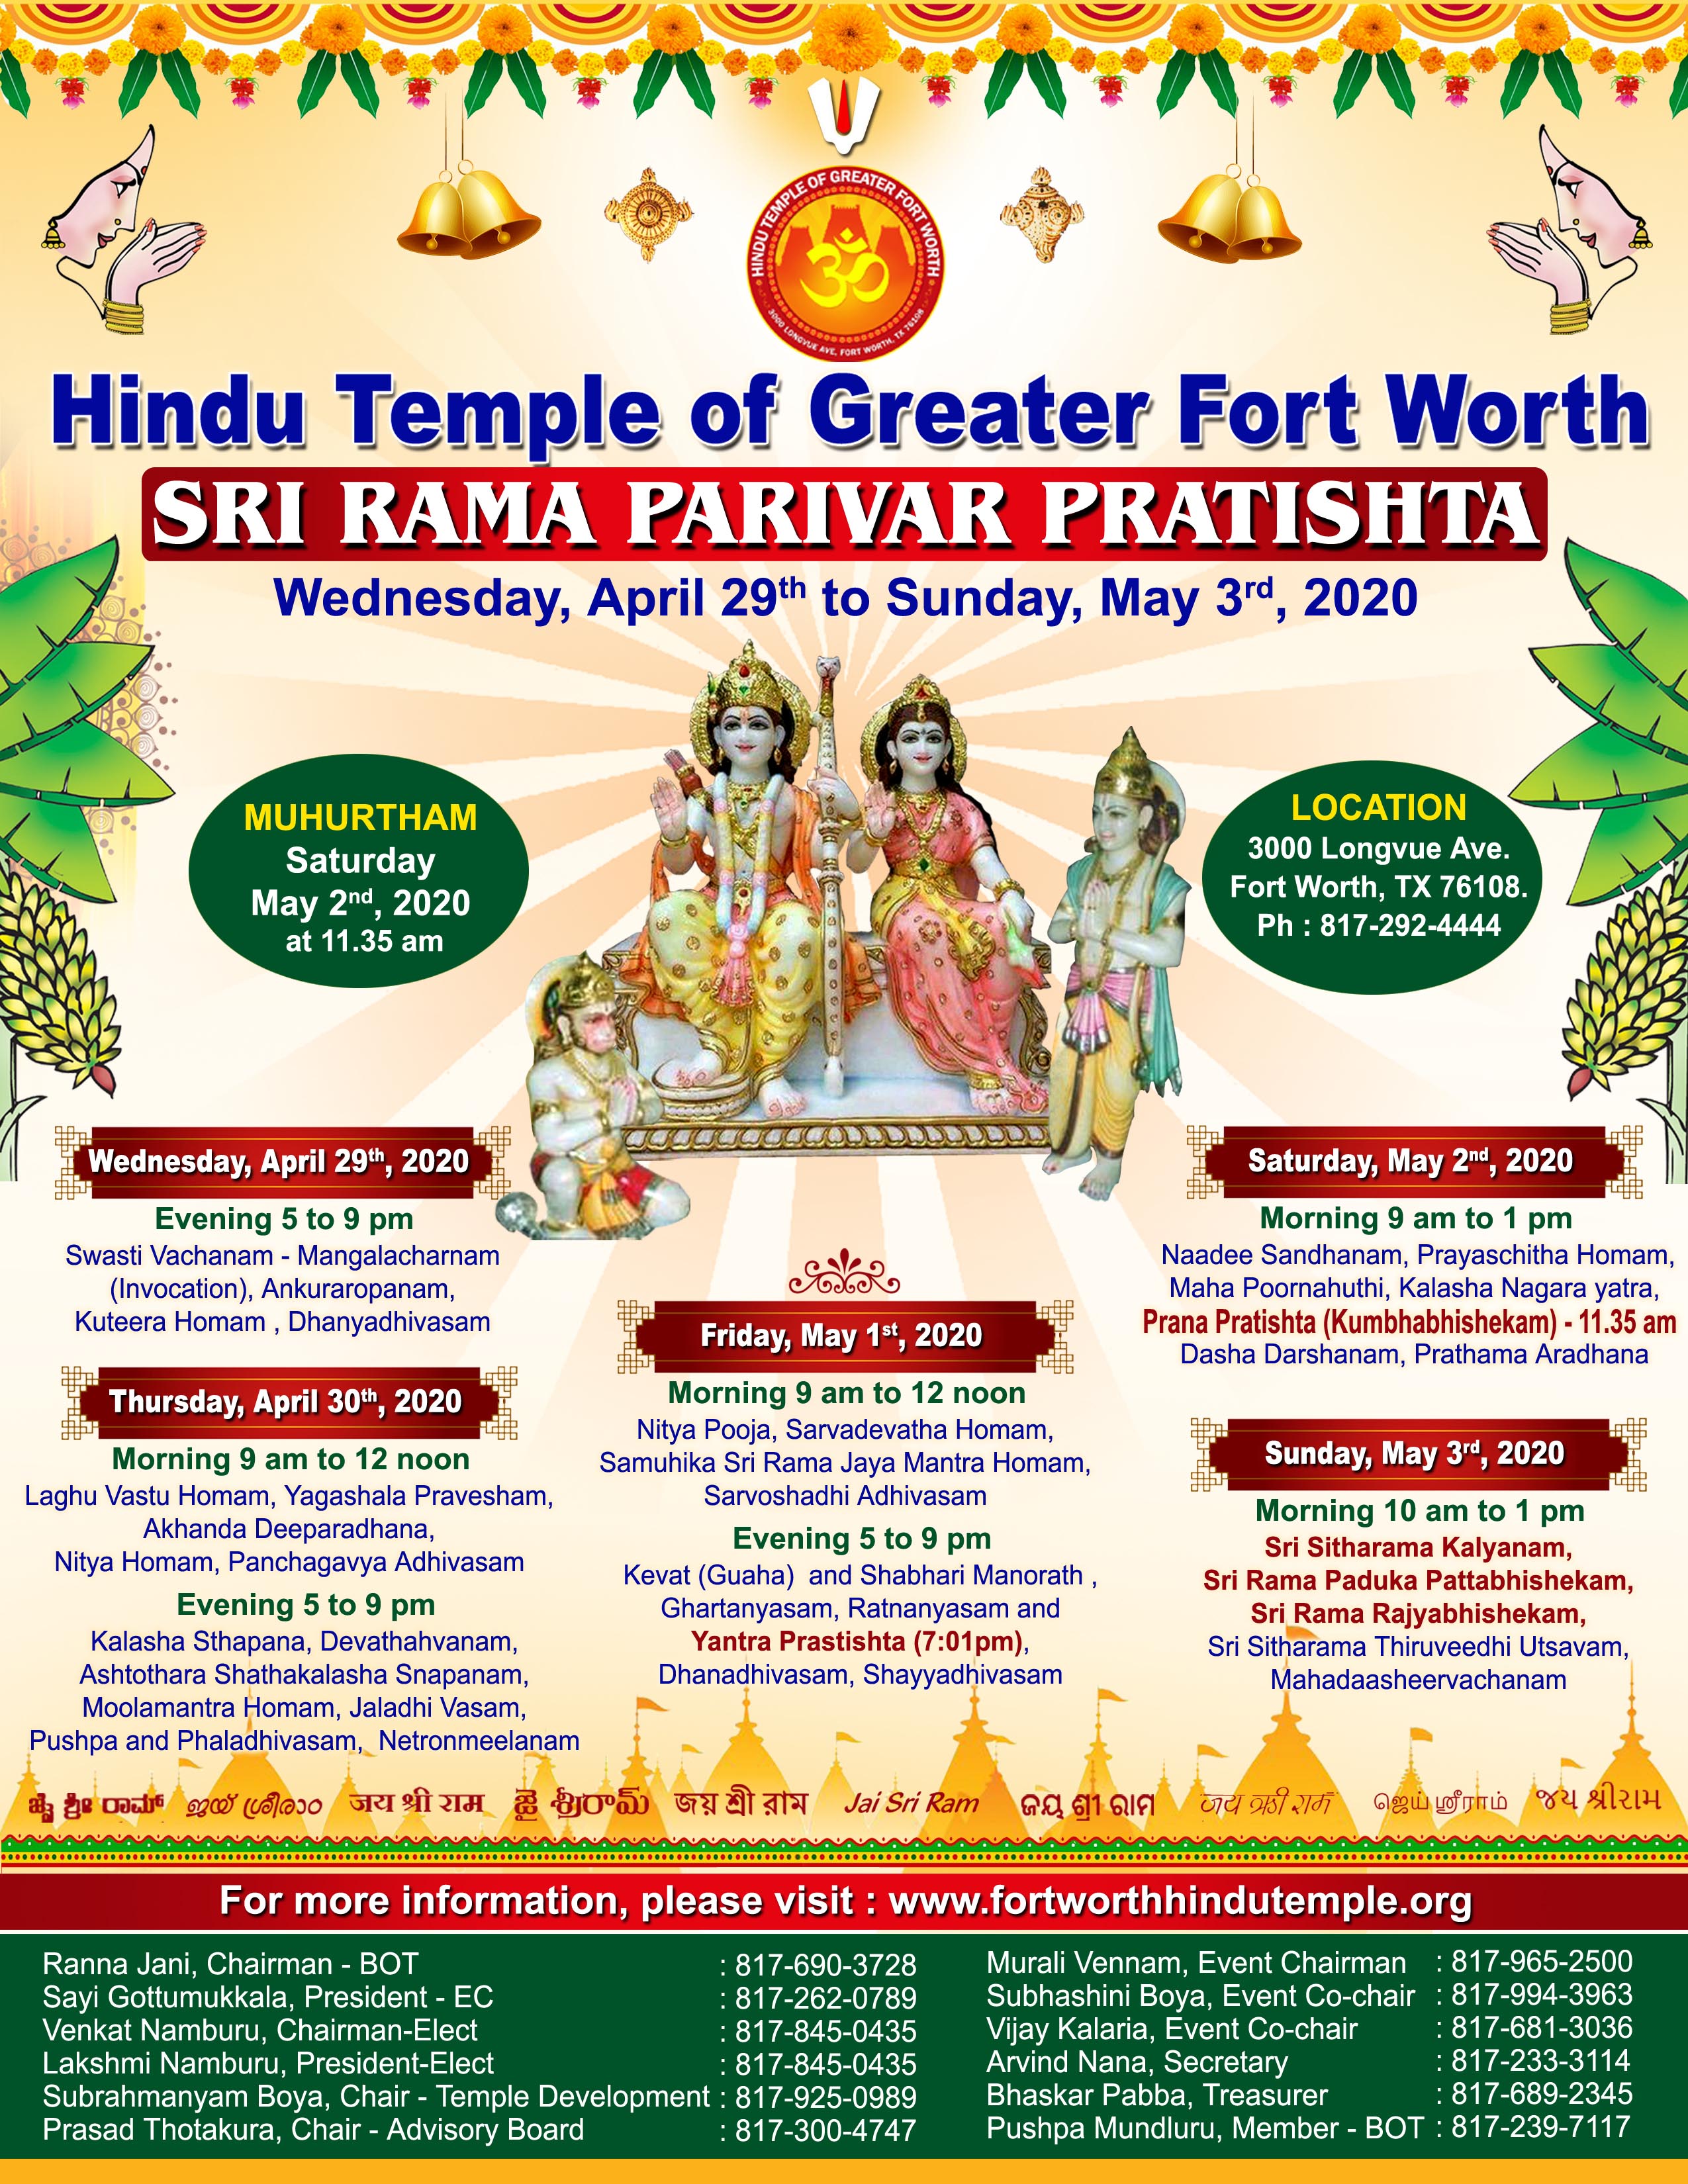 Sri Rama Parvirar Prana Pratishta